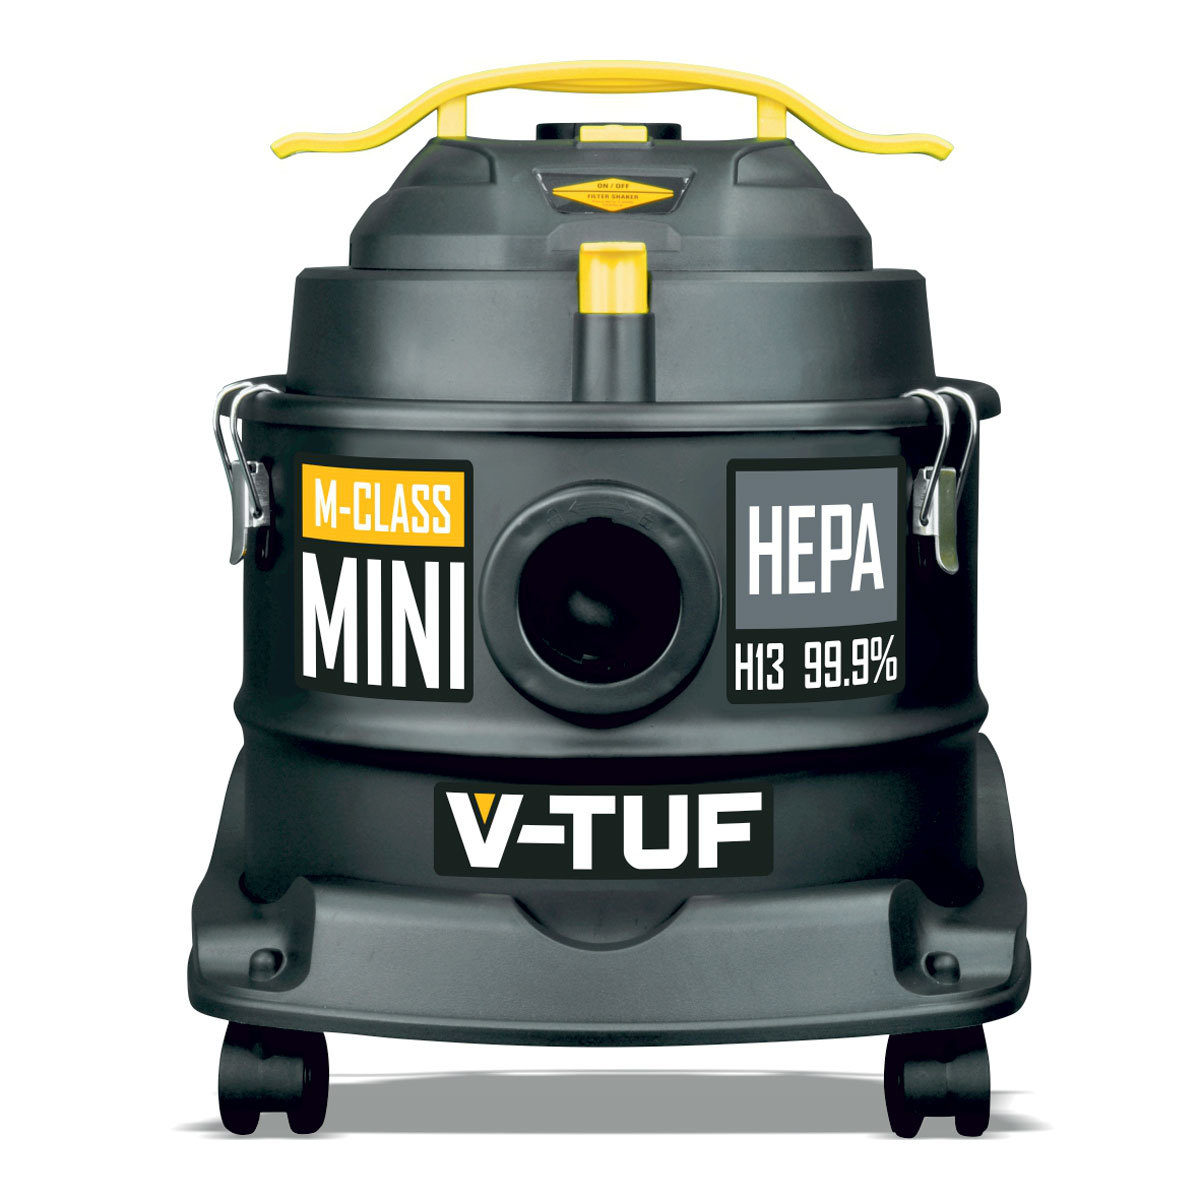 V-Tuf M Class 240V Vacuum Cleaner, VTM1240